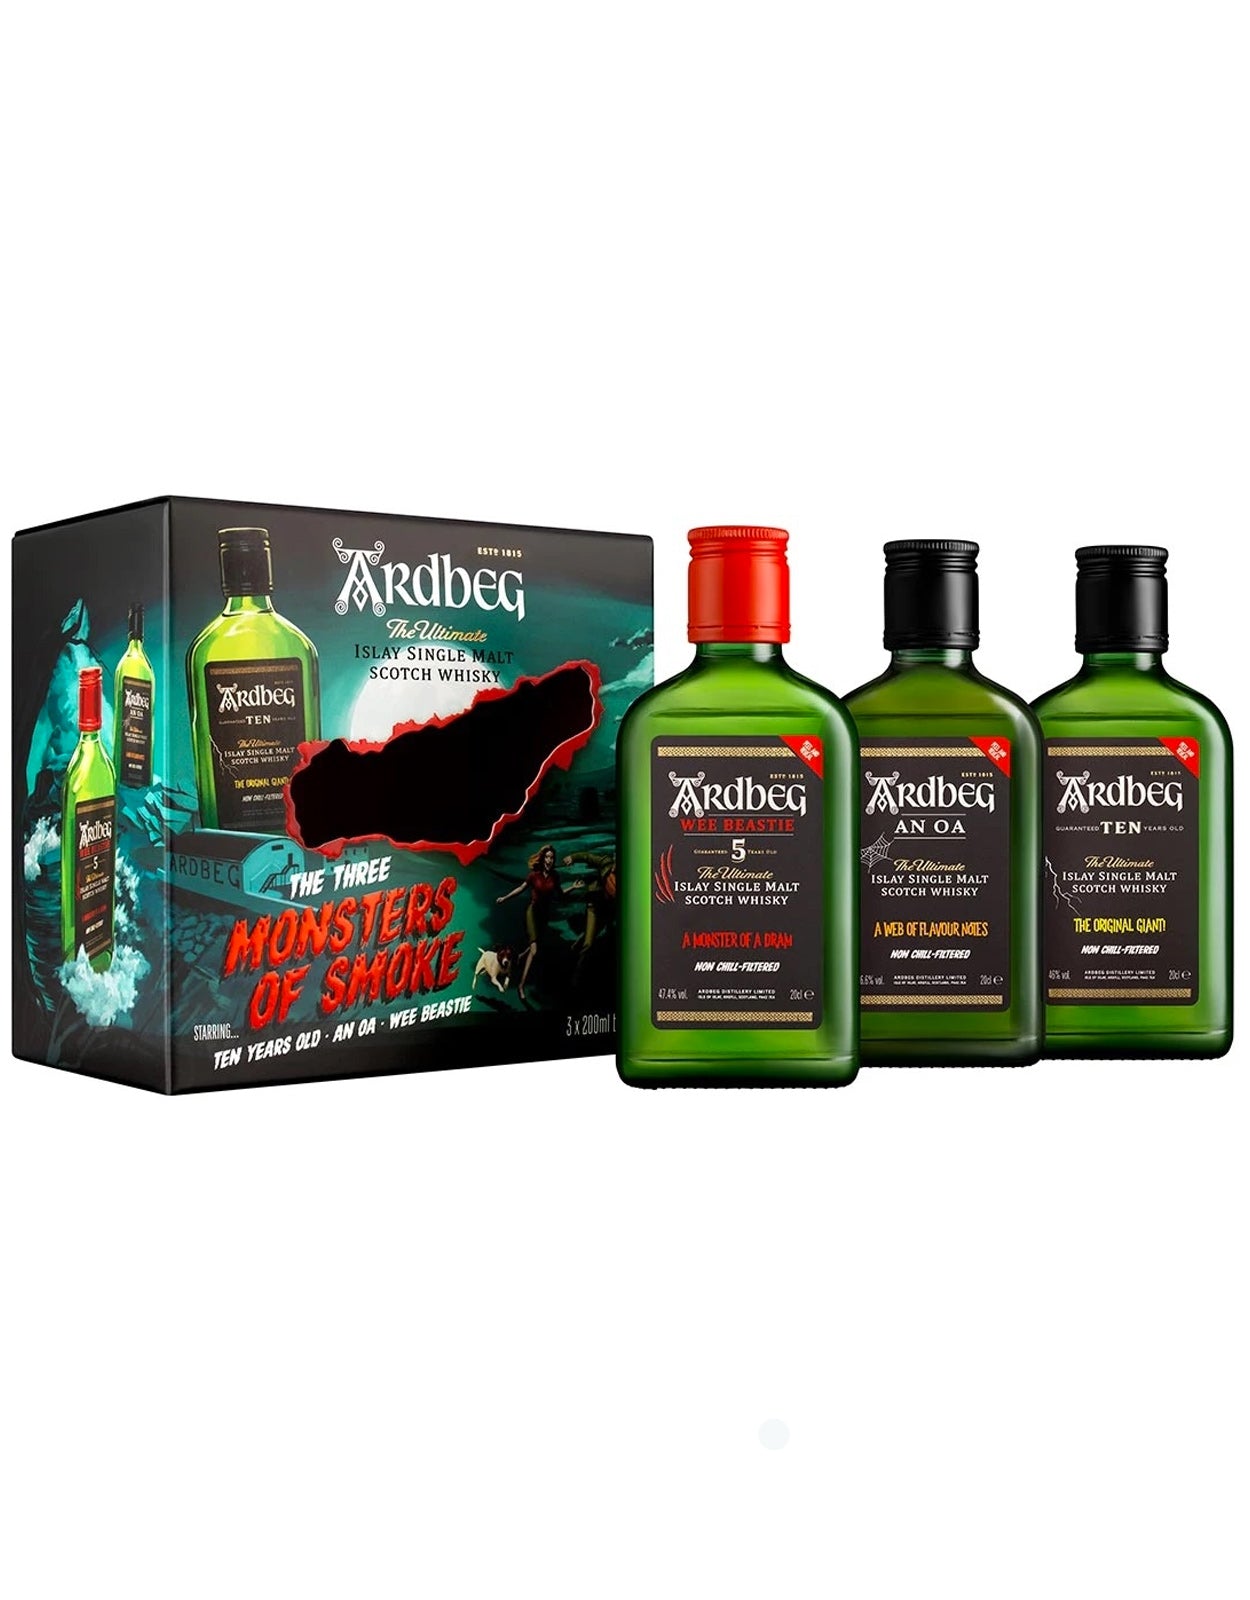 Ardbeg Monsters Of Smoke 200 ml - 3 Bottle Pack